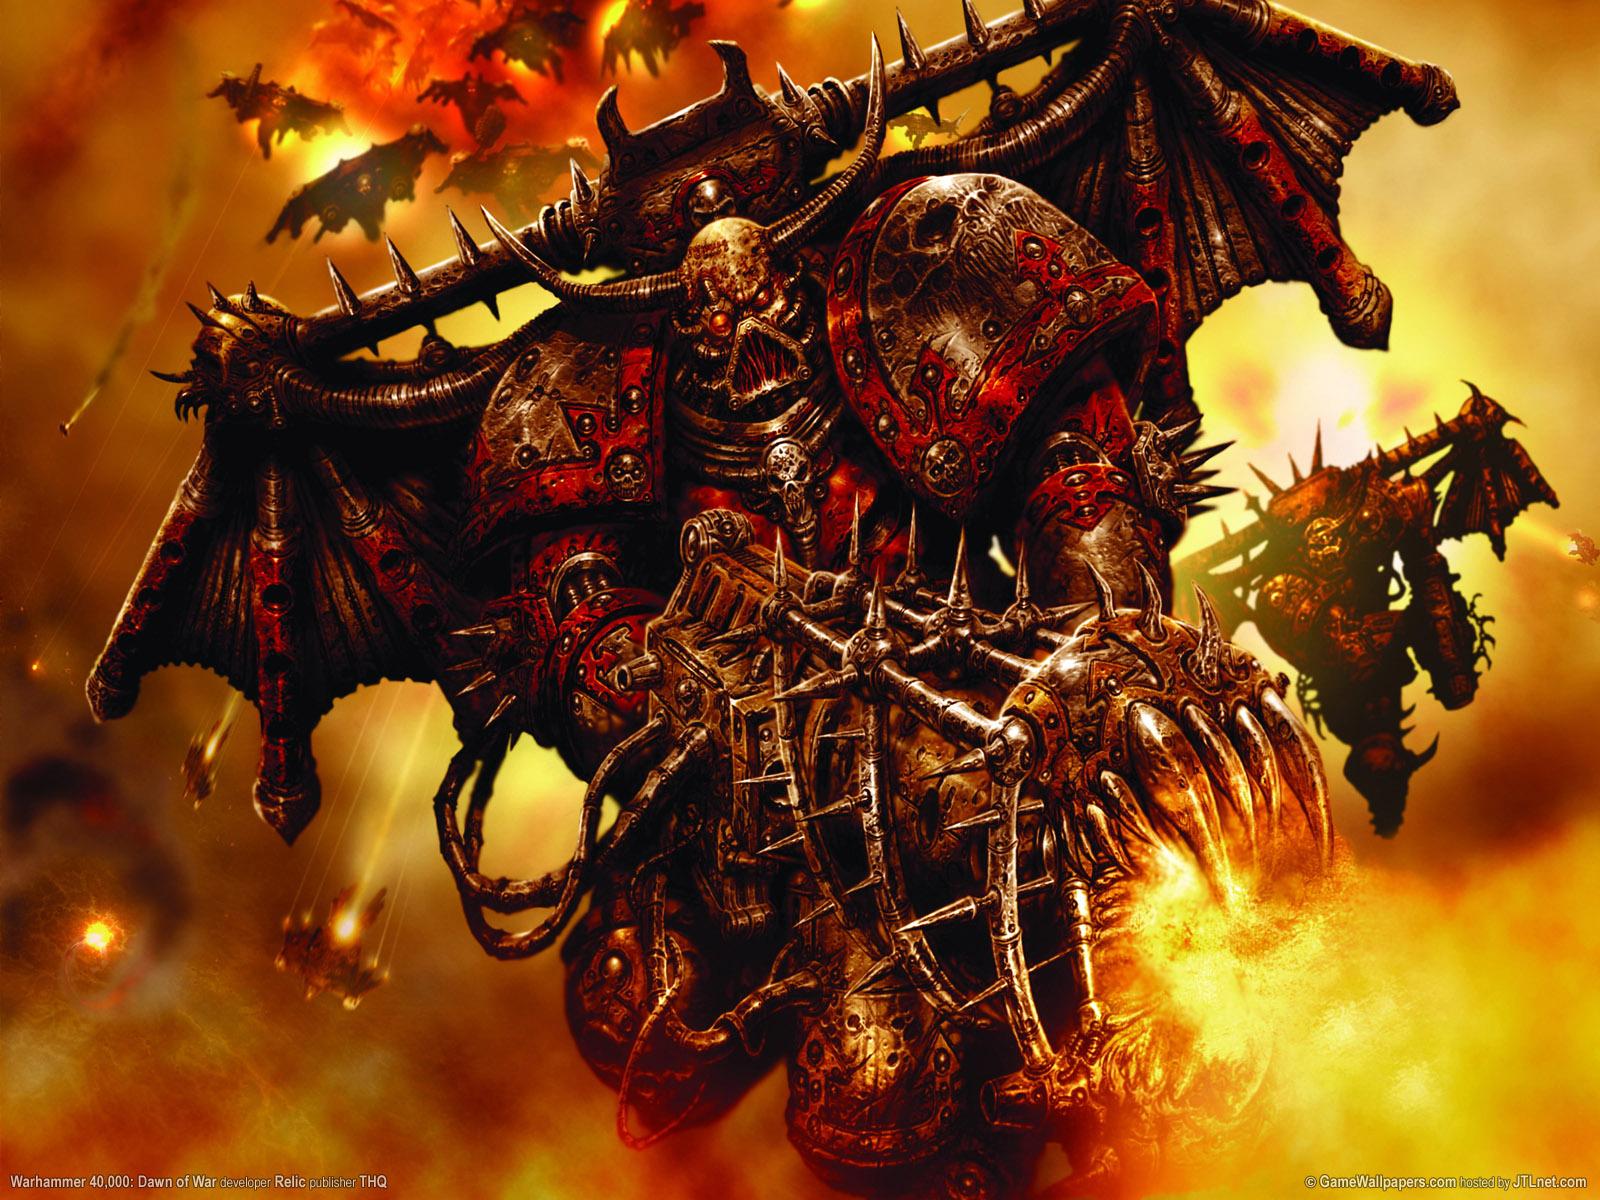 fond d'écran warhammer 40k,oeuvre de cg,démon,personnage fictif,créature surnaturelle,jeux